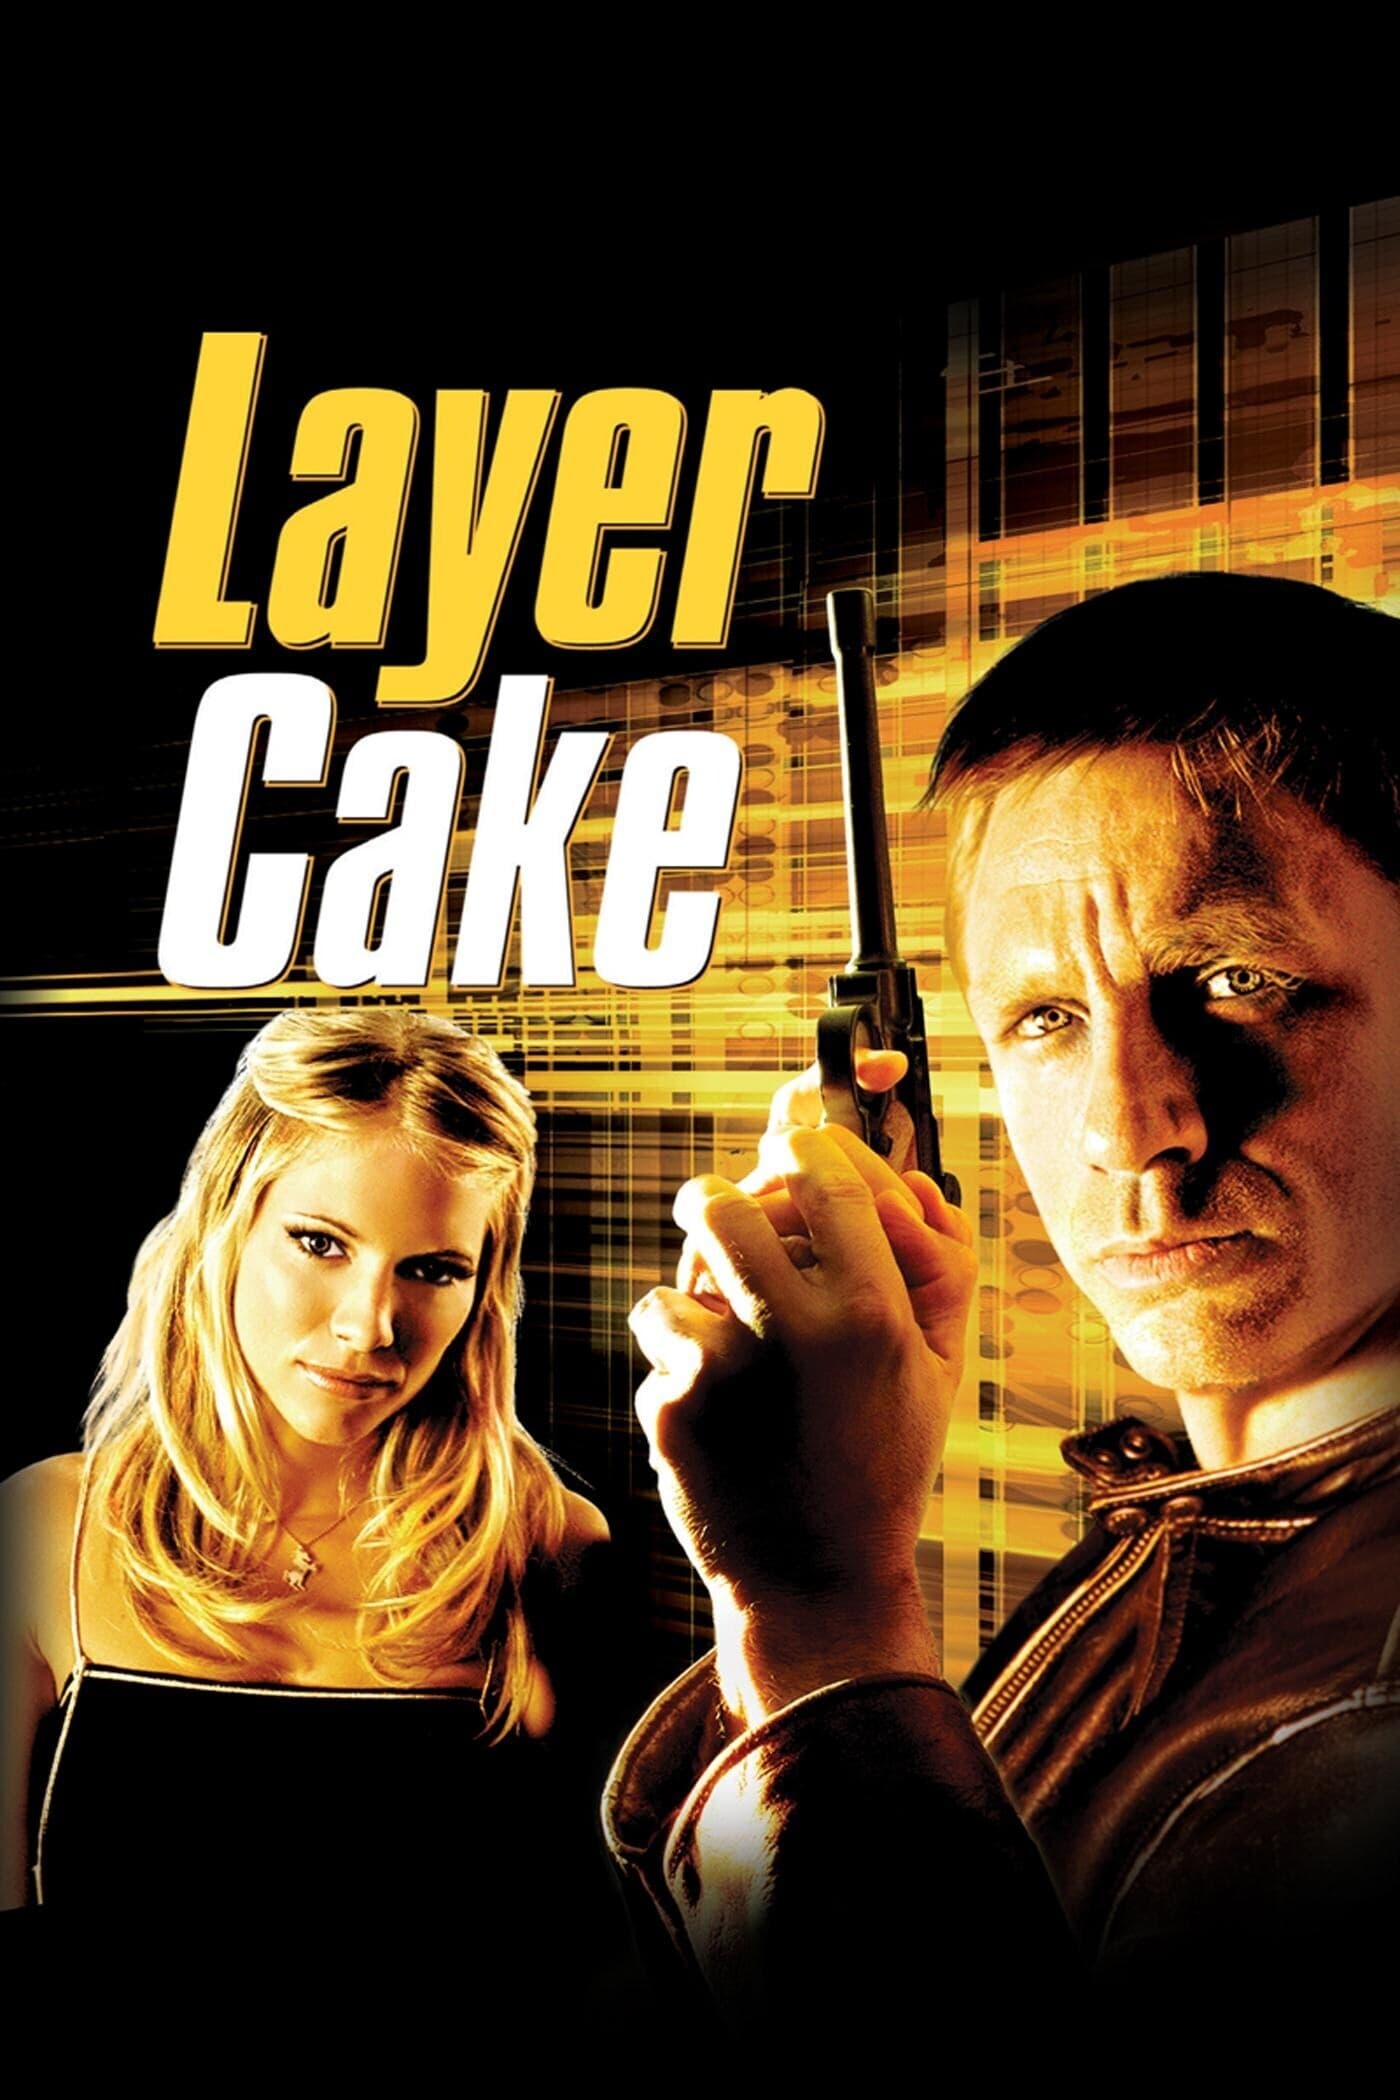 دانلود صوت دوبله فیلم Layer Cake 2004